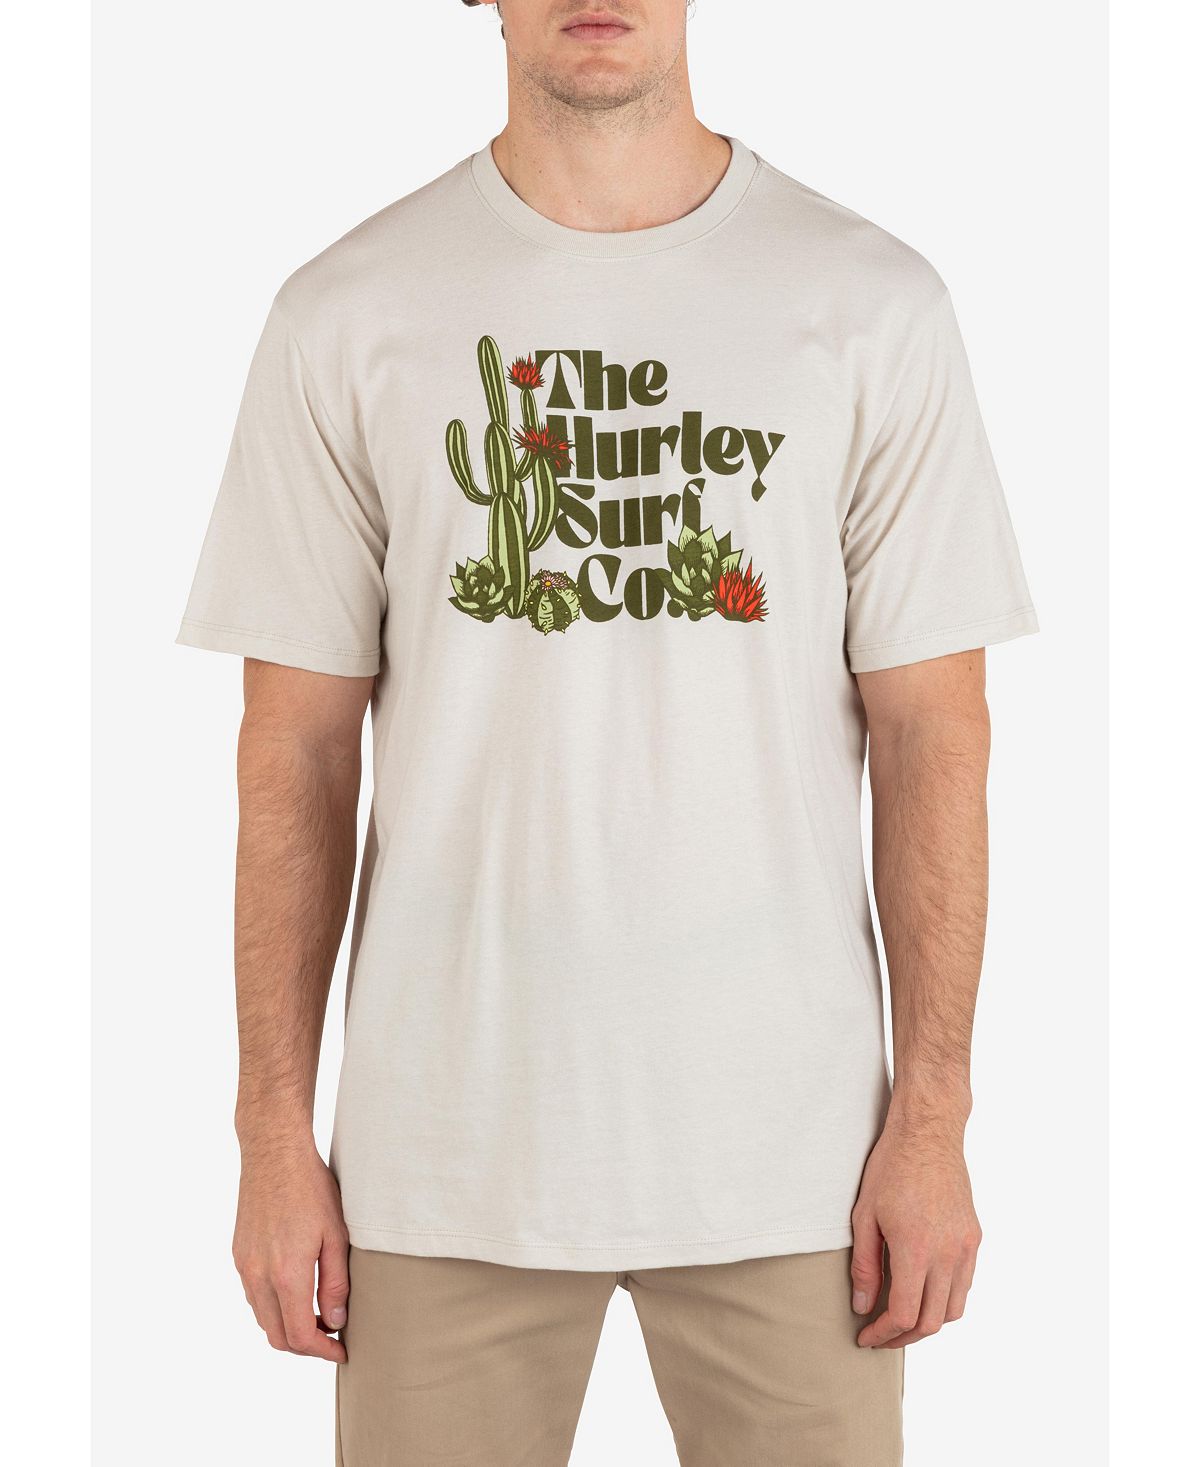 Мужская повседневная футболка Baja с коротким рукавом Hurley мужская повседневная футболка с коротким рукавом для укулеле hurley тан бежевый